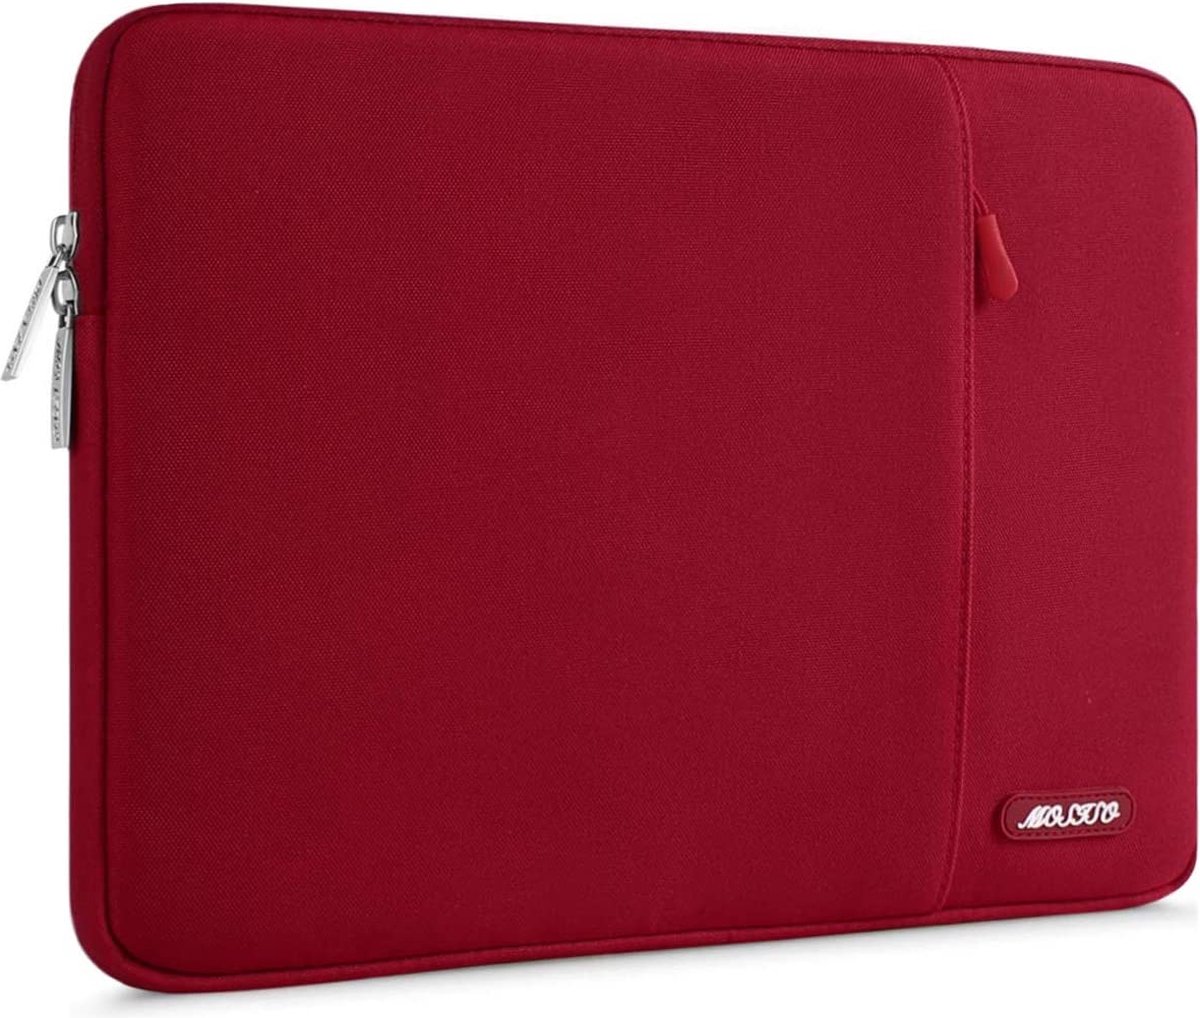 Selwo™ beschermhoes/etui voor laptop of notebook, van polyester, waterafstotend, verticaal georiënteerde stijl, rood 13-13,3 inch (33 -33,8 cm)